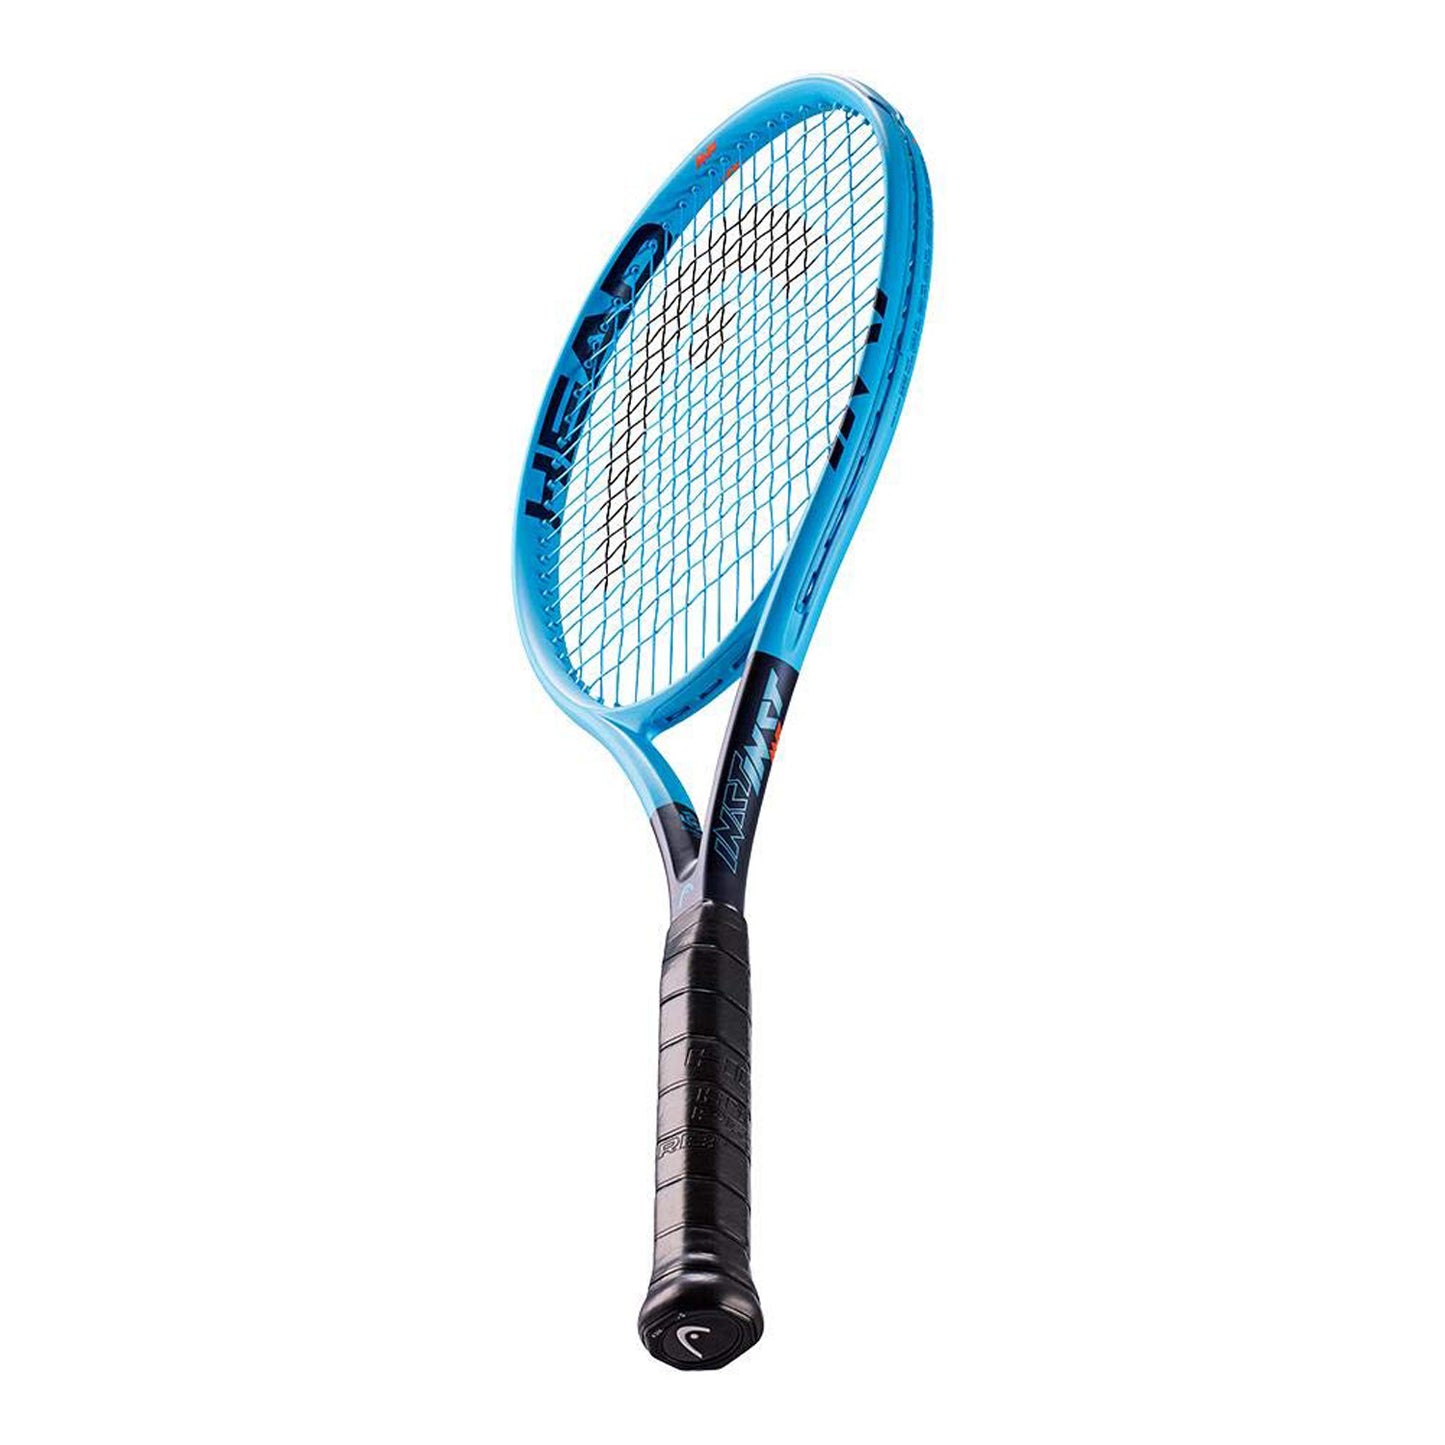 HEAD Graphene 360 Instinct MP Graphite Strung Tennis Racquet - Best Price online Prokicksports.com